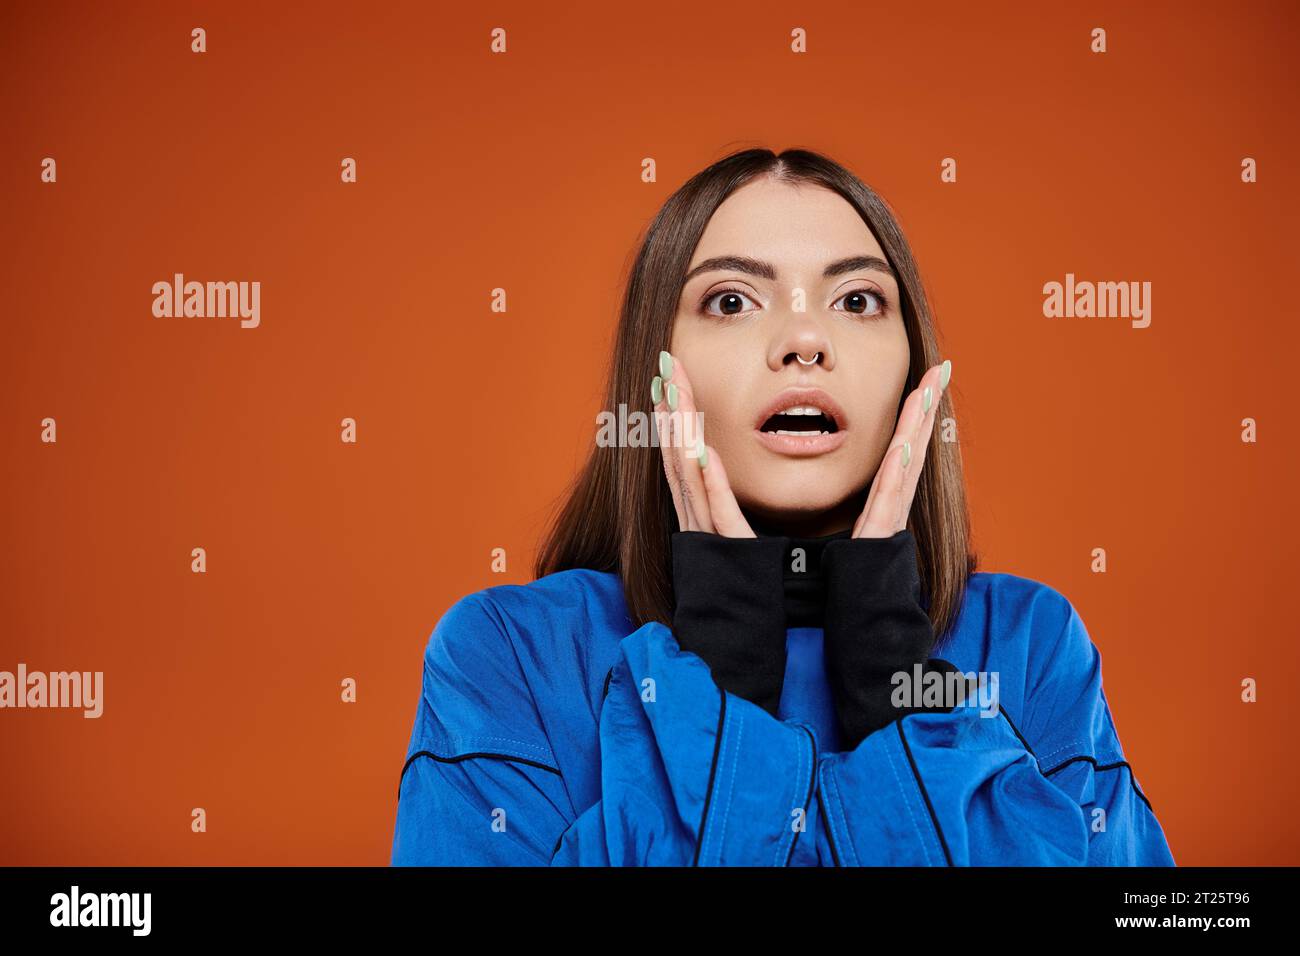 Schockierte Frau mit durchbohrter Nase, die Wangen mit den Händen berührt und die Kamera vor orangefarbenem Hintergrund betrachtet Stockfoto